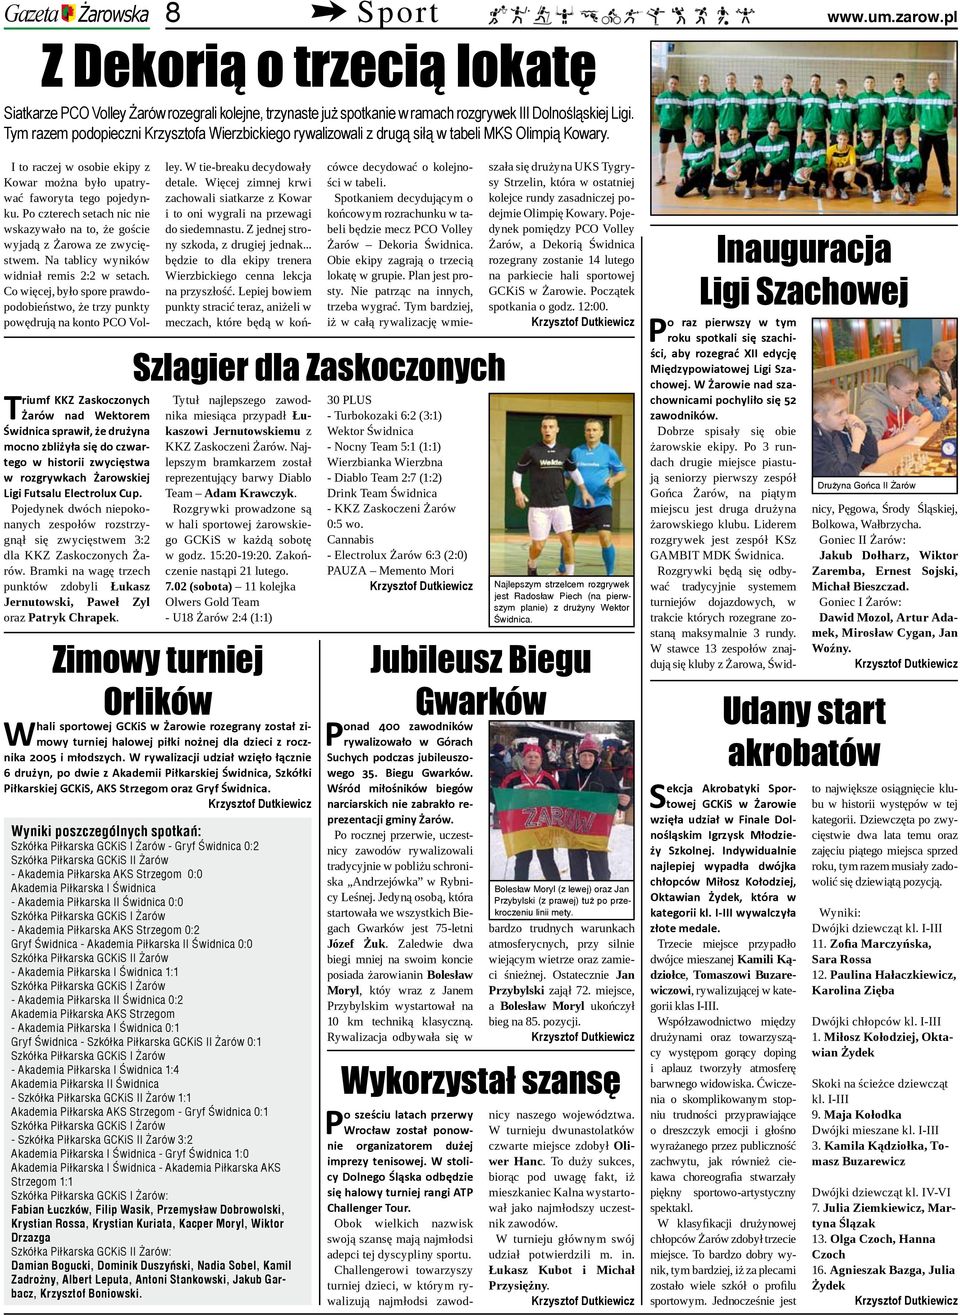 Triumf KKZ Zaskoczonych Żarów nad Wektorem Świdnica sprawił, że drużyna mocno zbliżyła się do czwartego w historii zwycięstwa w rozgrywkach Żarowskiej Ligi Futsalu Electrolux Cup.